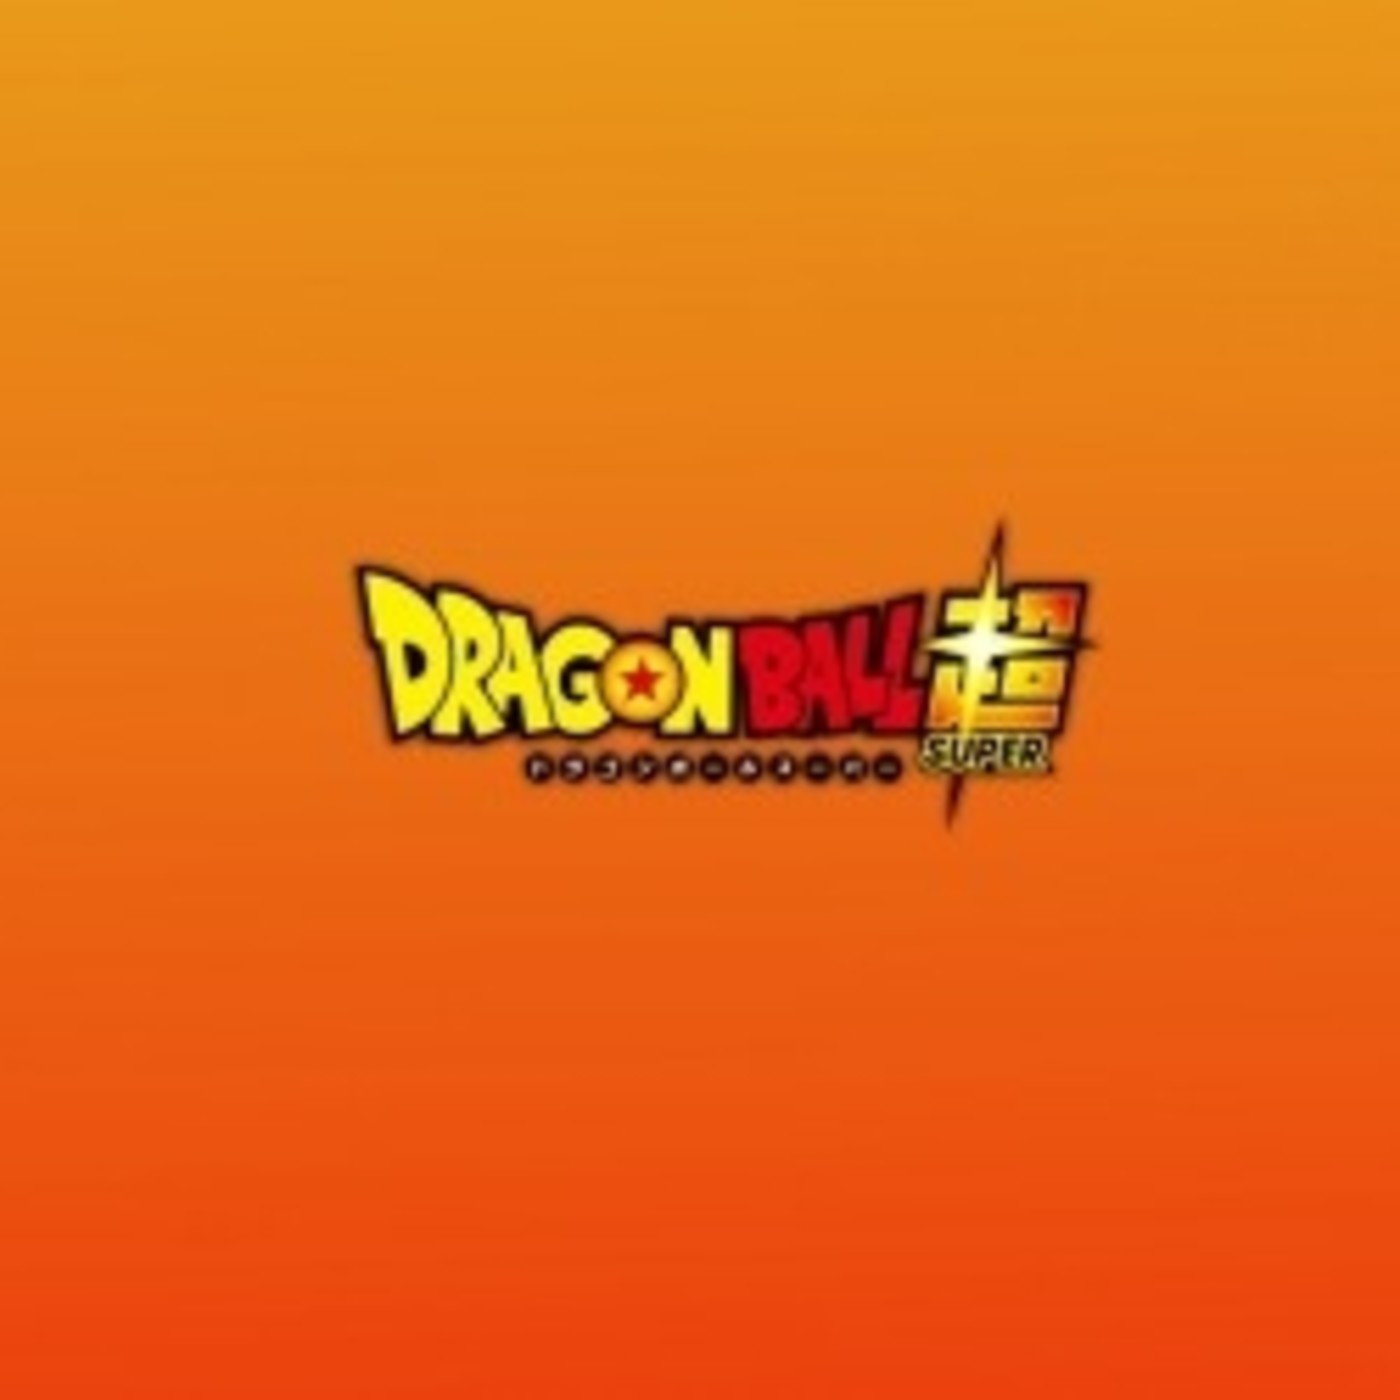 Gambatte Podcast | 'Dragon Ball Super': Impresiones y ep. 1,2 y 3 en castellano